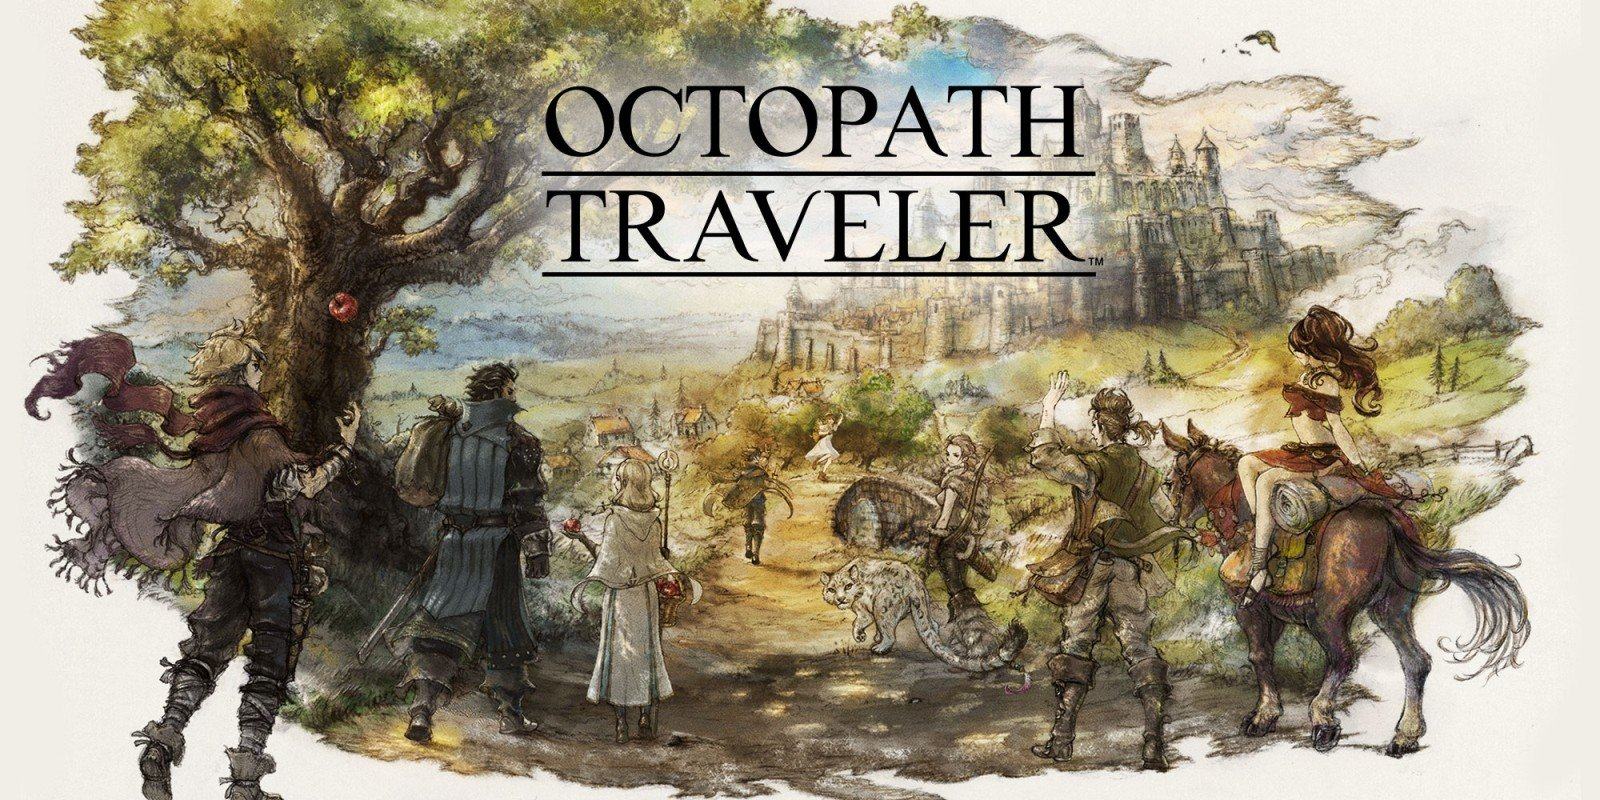 منتج Octopath Traveler يشوّق للعديد من الإعلانات العام المقبل